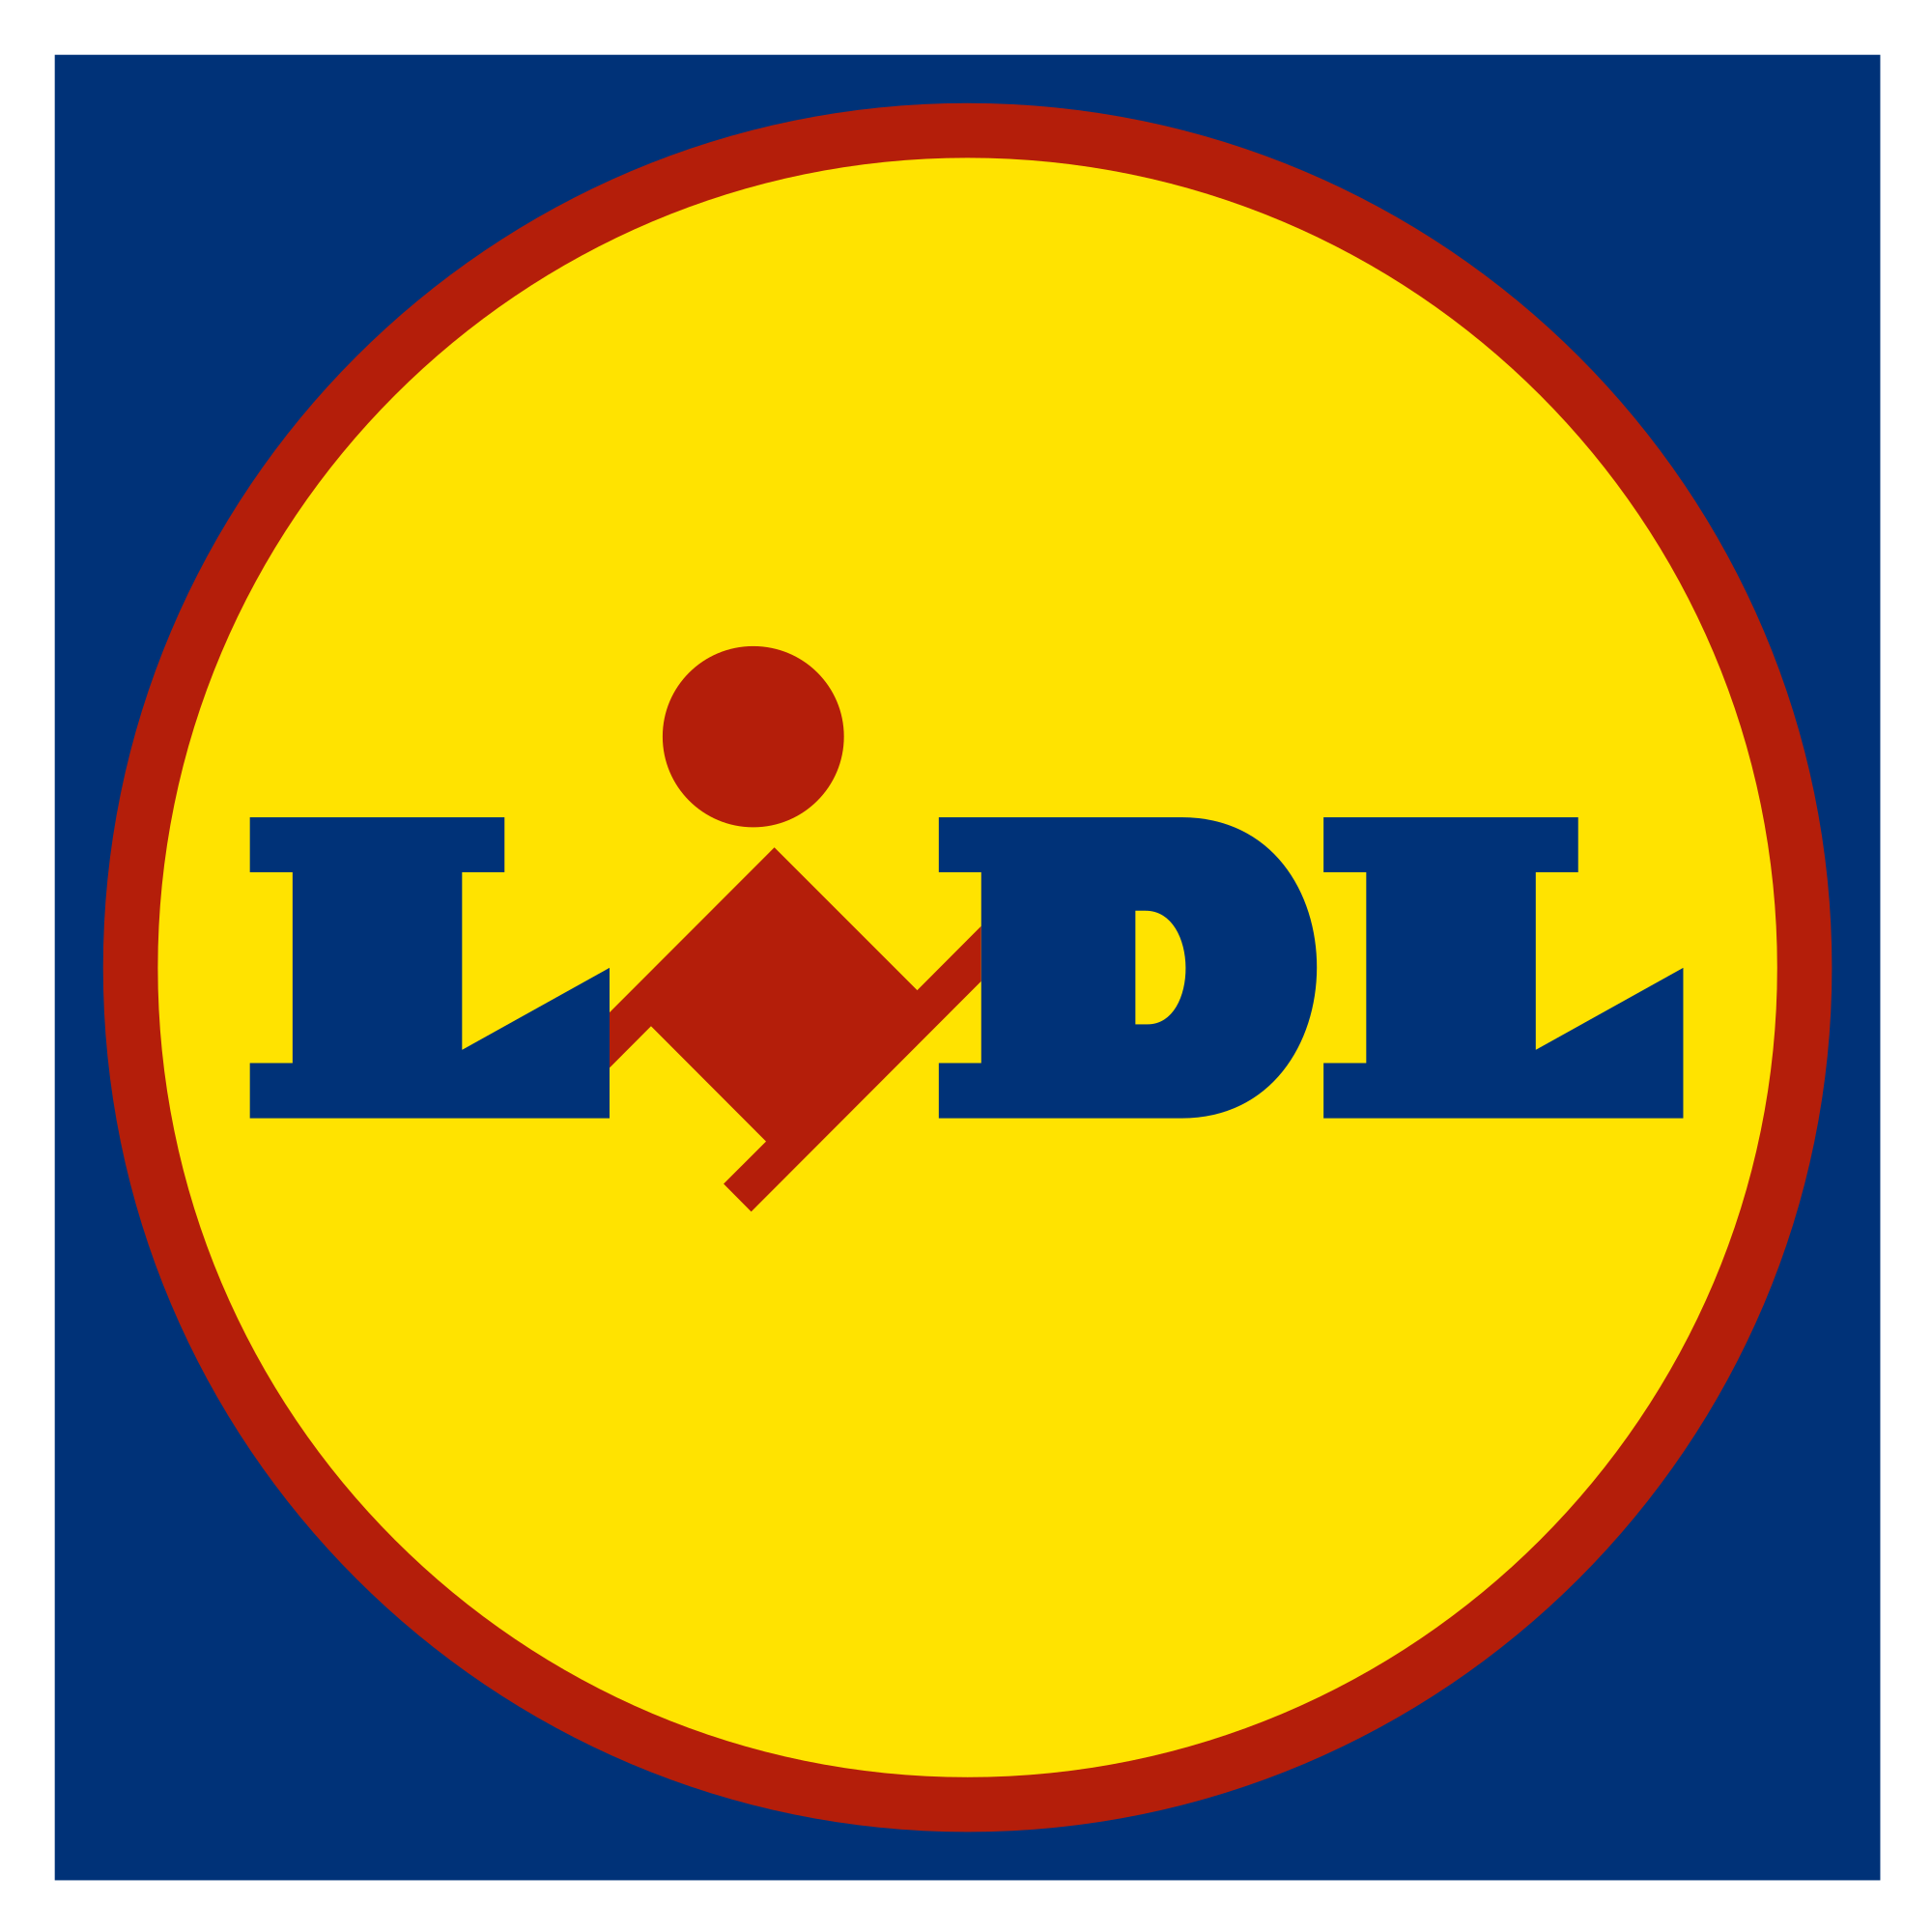 lidl logo via homepage